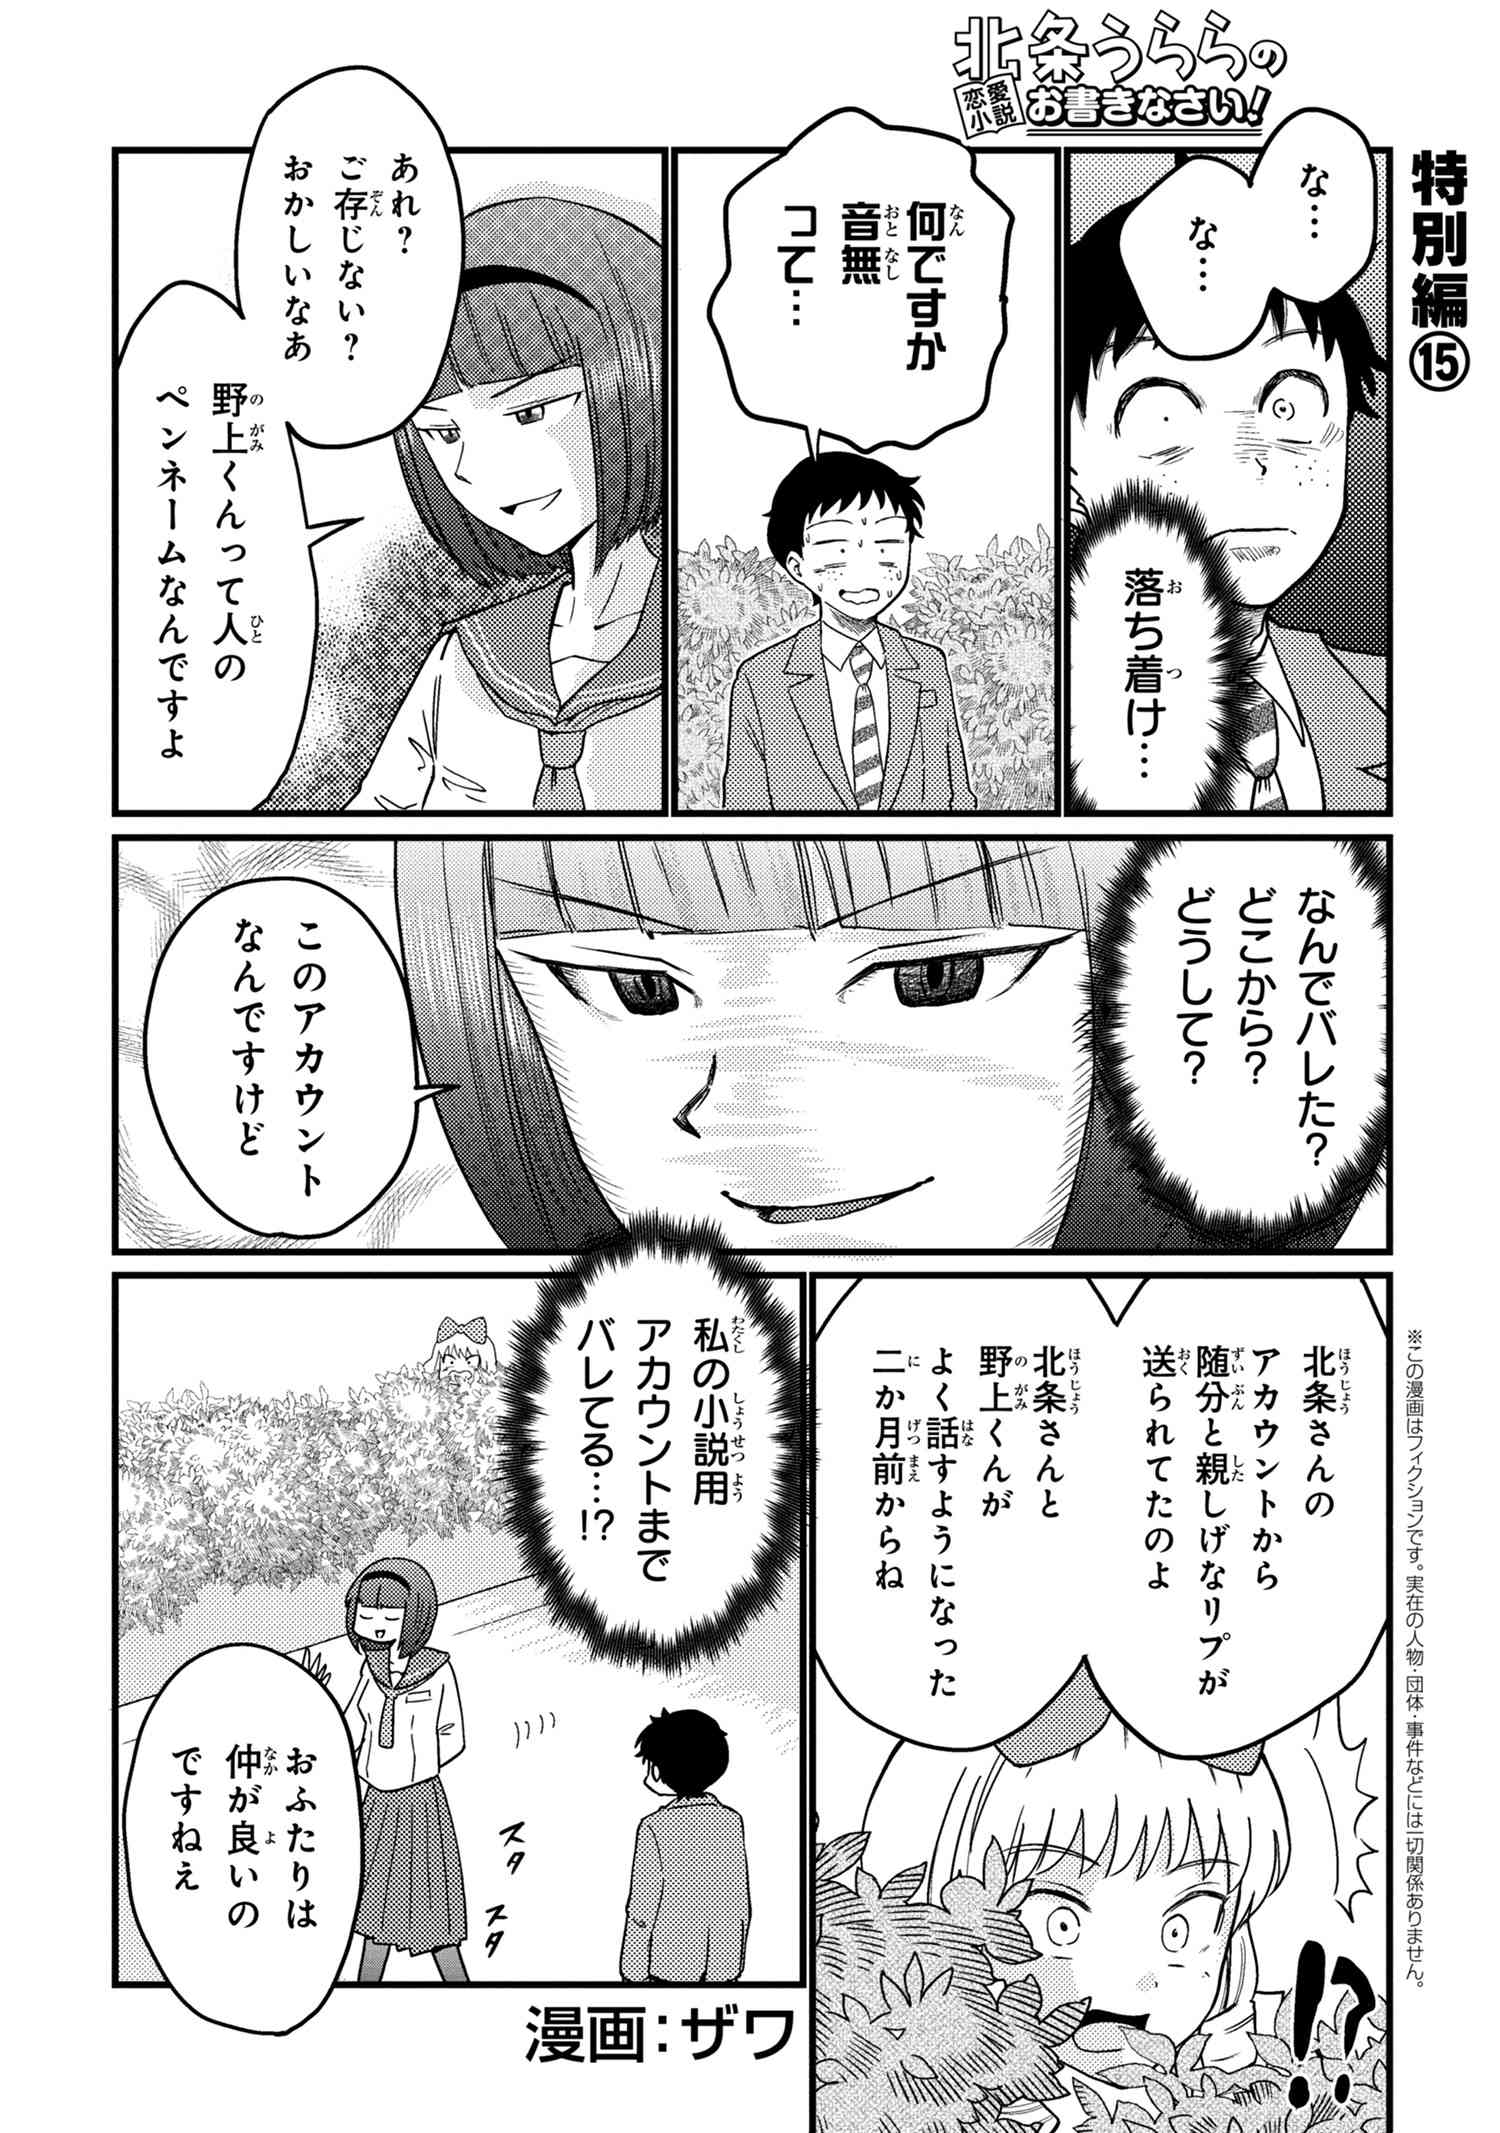 Houjou Urara no renai shousetsu o kaki nasai! - Chapter 15 - Page 1